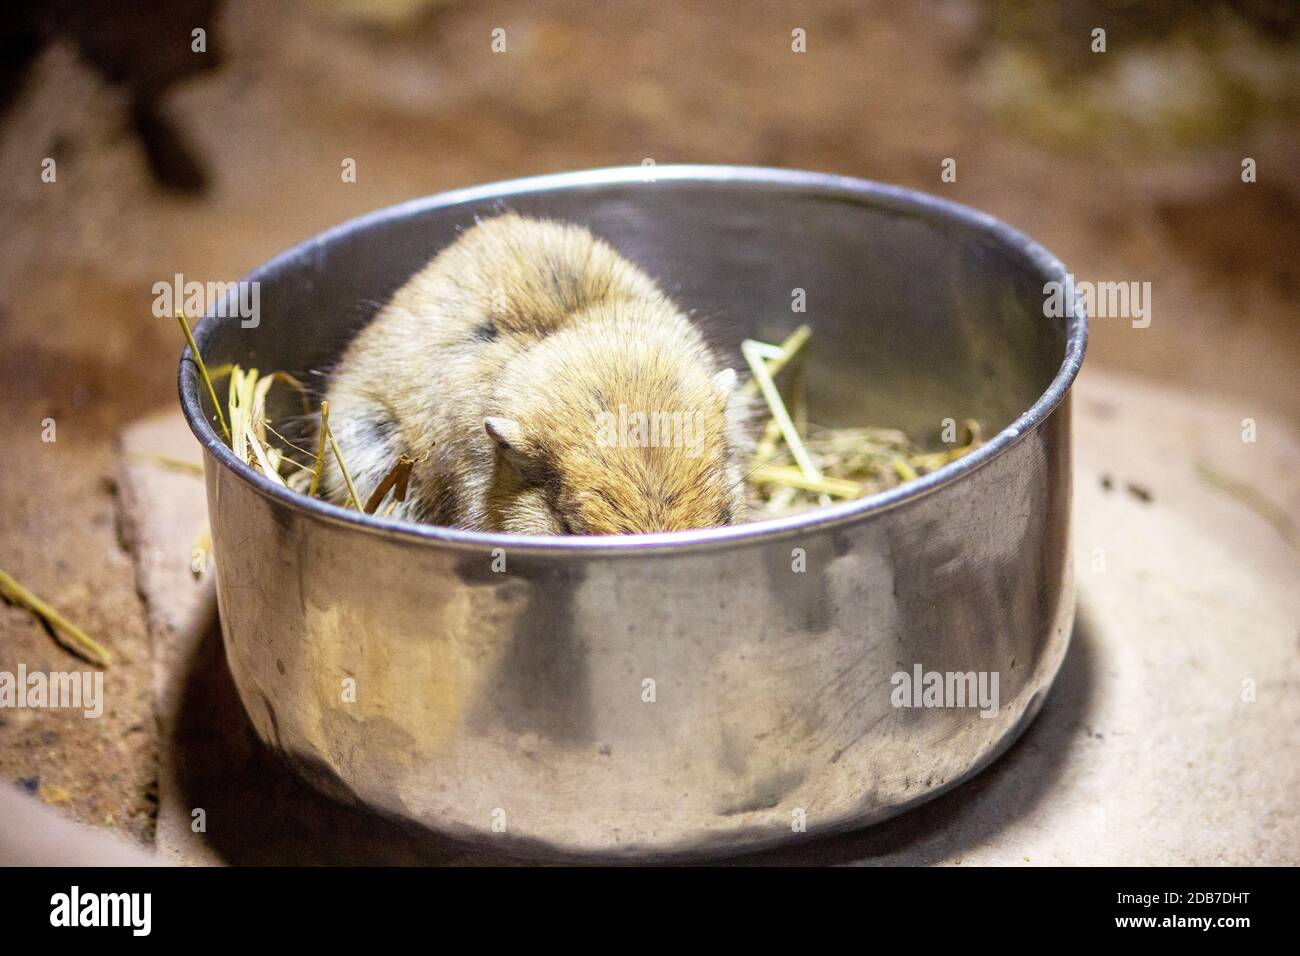 Immagine di un ratto di sabbia grassa mentre si mangia nella sua ciotola libera, Psammomys obesus Foto Stock